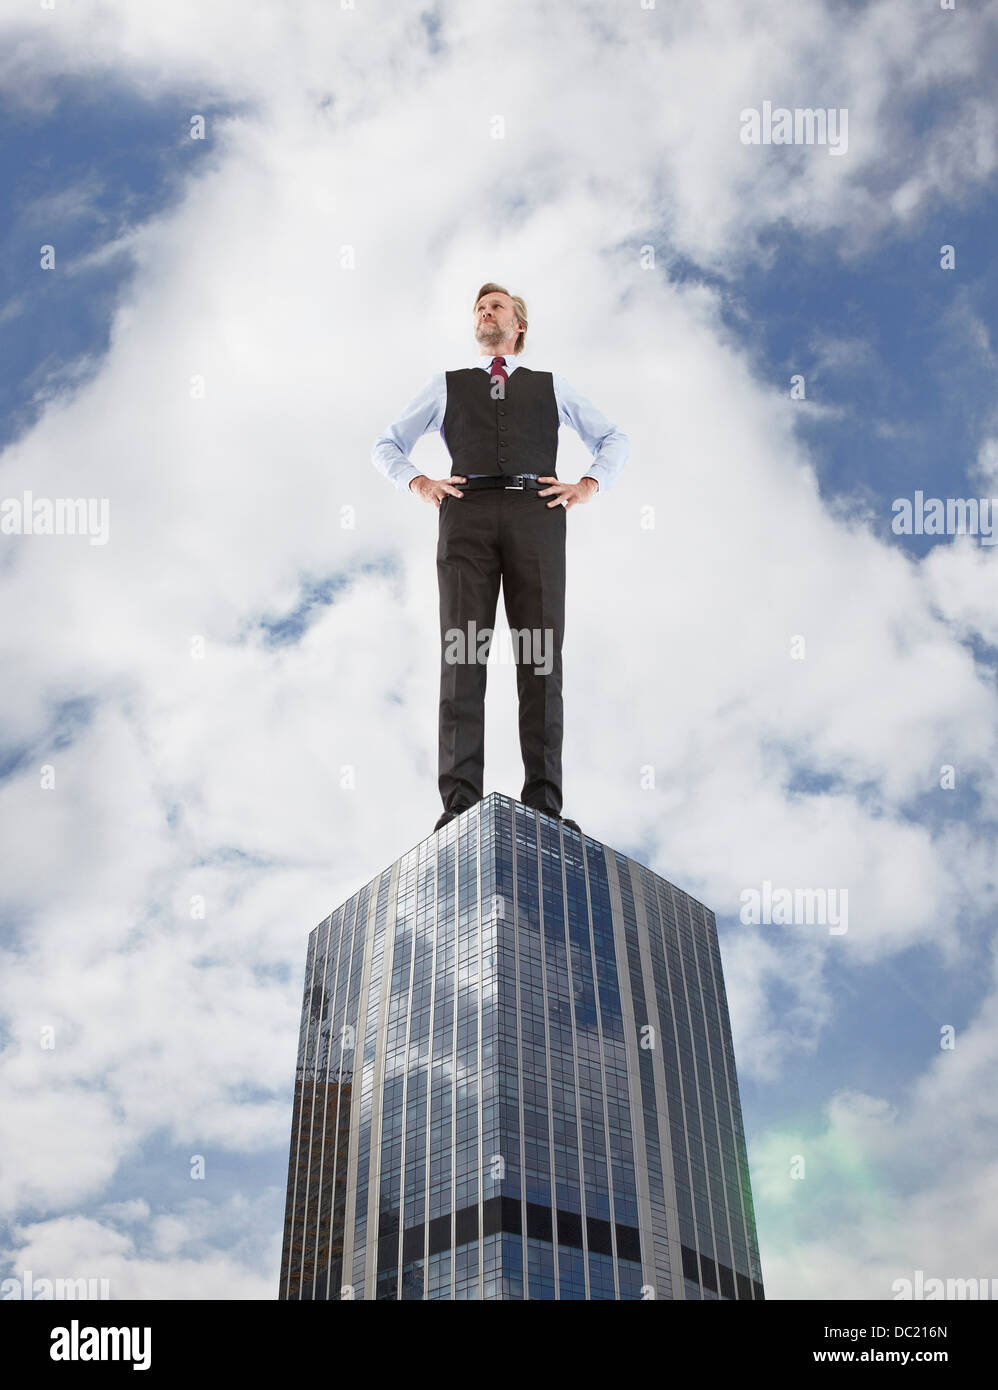 De grands businessman standing on gratte-ciel, low angle view Banque D'Images